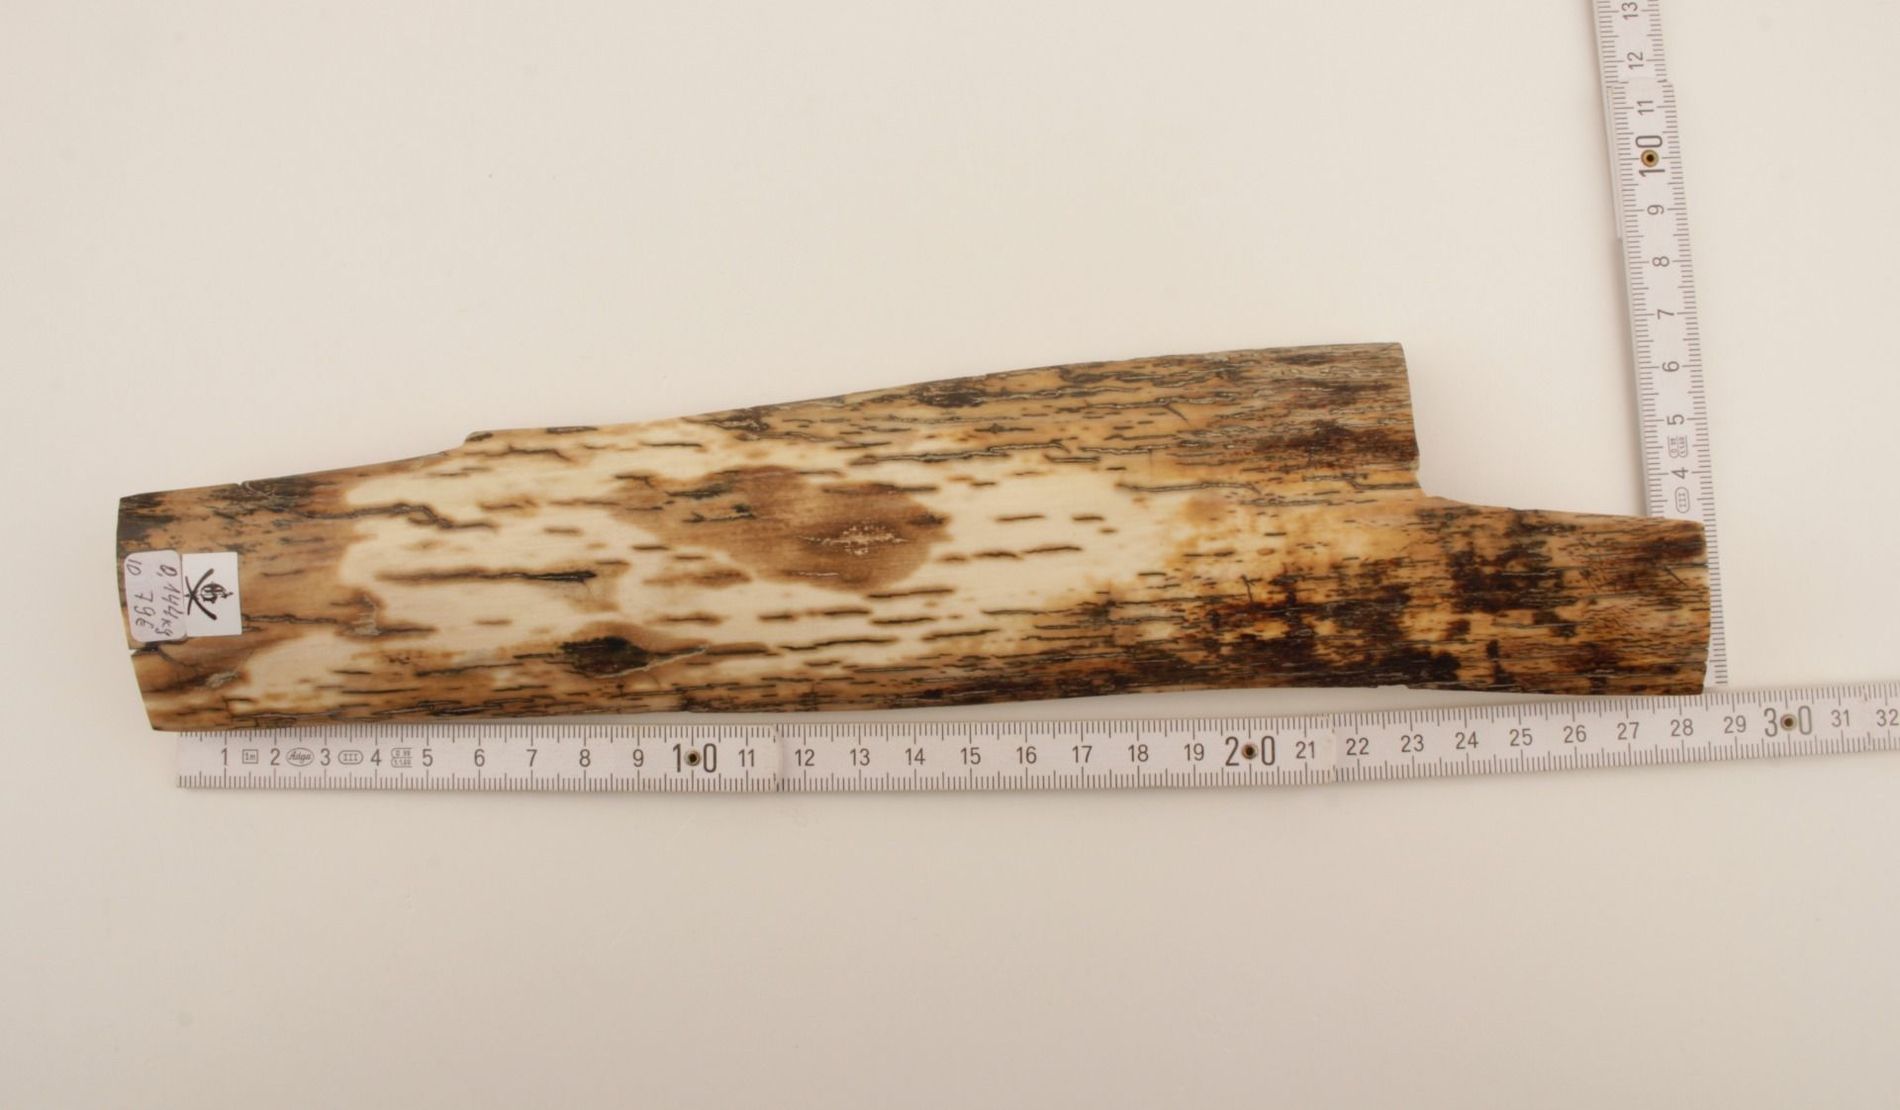 White-mustard mammoth bark